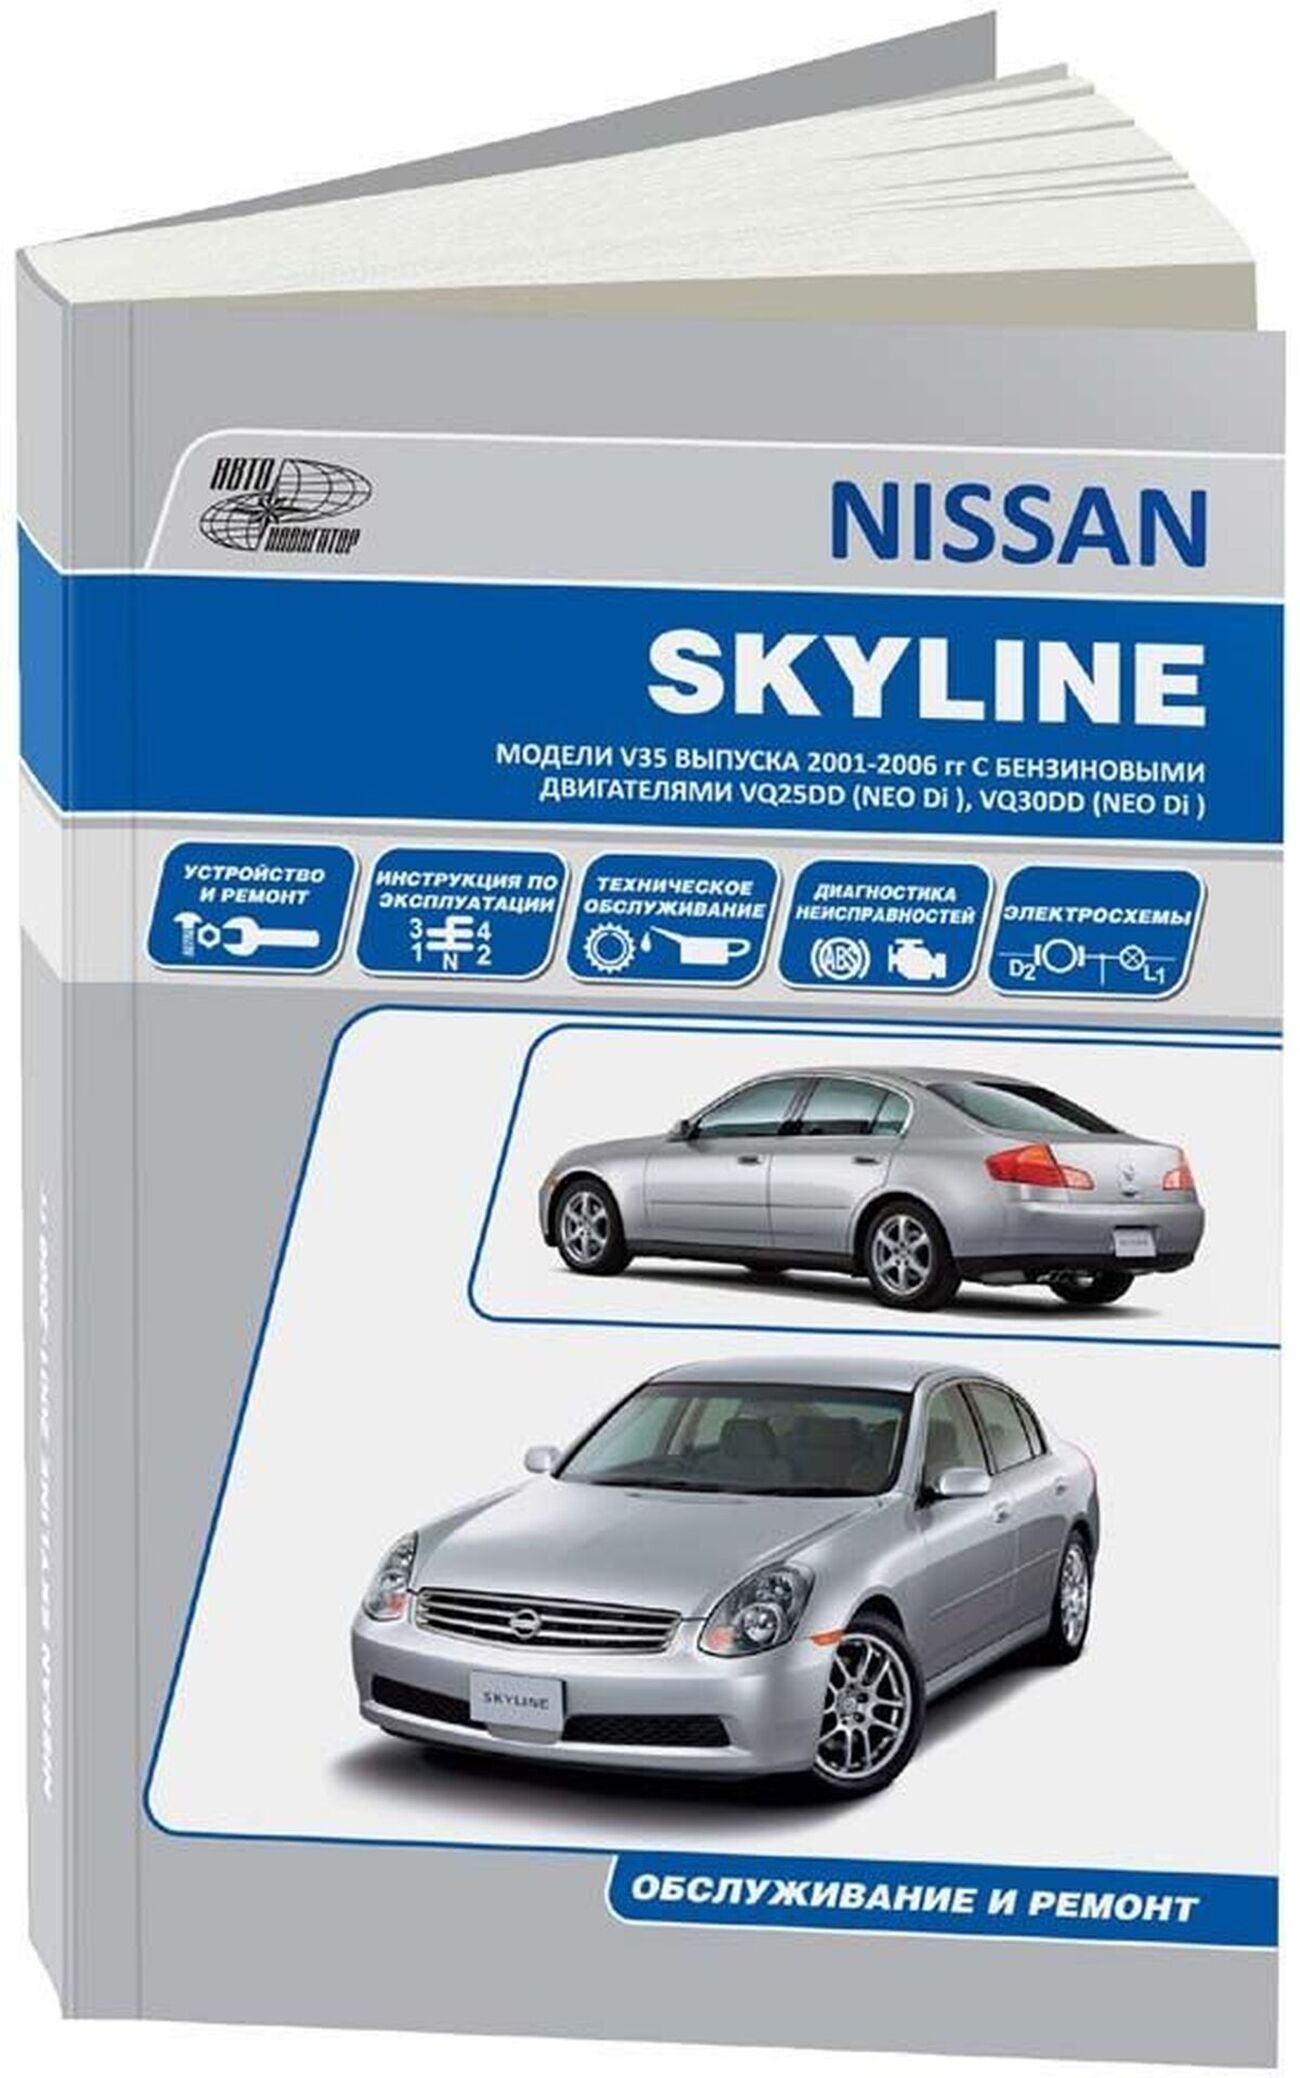 Книга: NISSAN SKYLINE V35 (б) 2001-2006 г.в., рем., экспл., то | Легион-Aвтодата